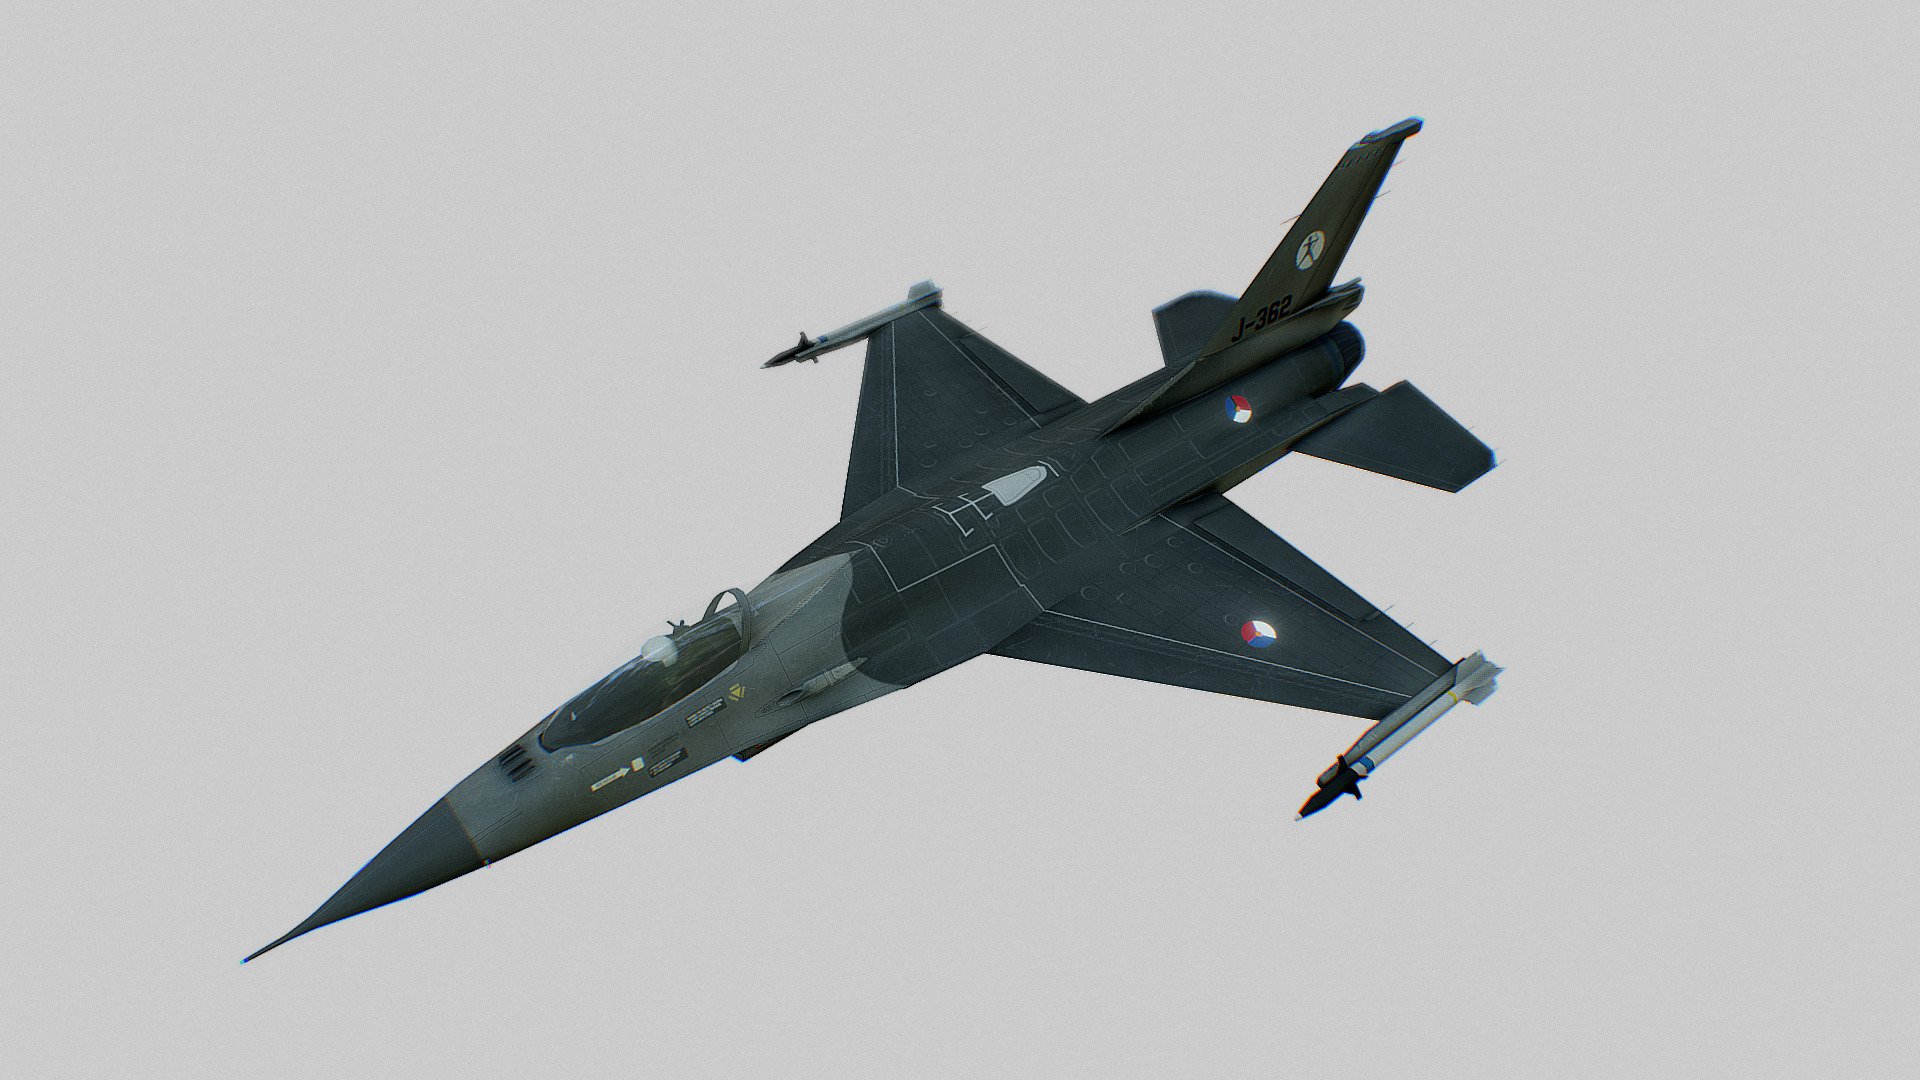 F-16 Falcon Leeuwarden (the Netherlands) based - General Dynamics F-16 - Falcon - Download Free 3D model by karelkiers 3d model